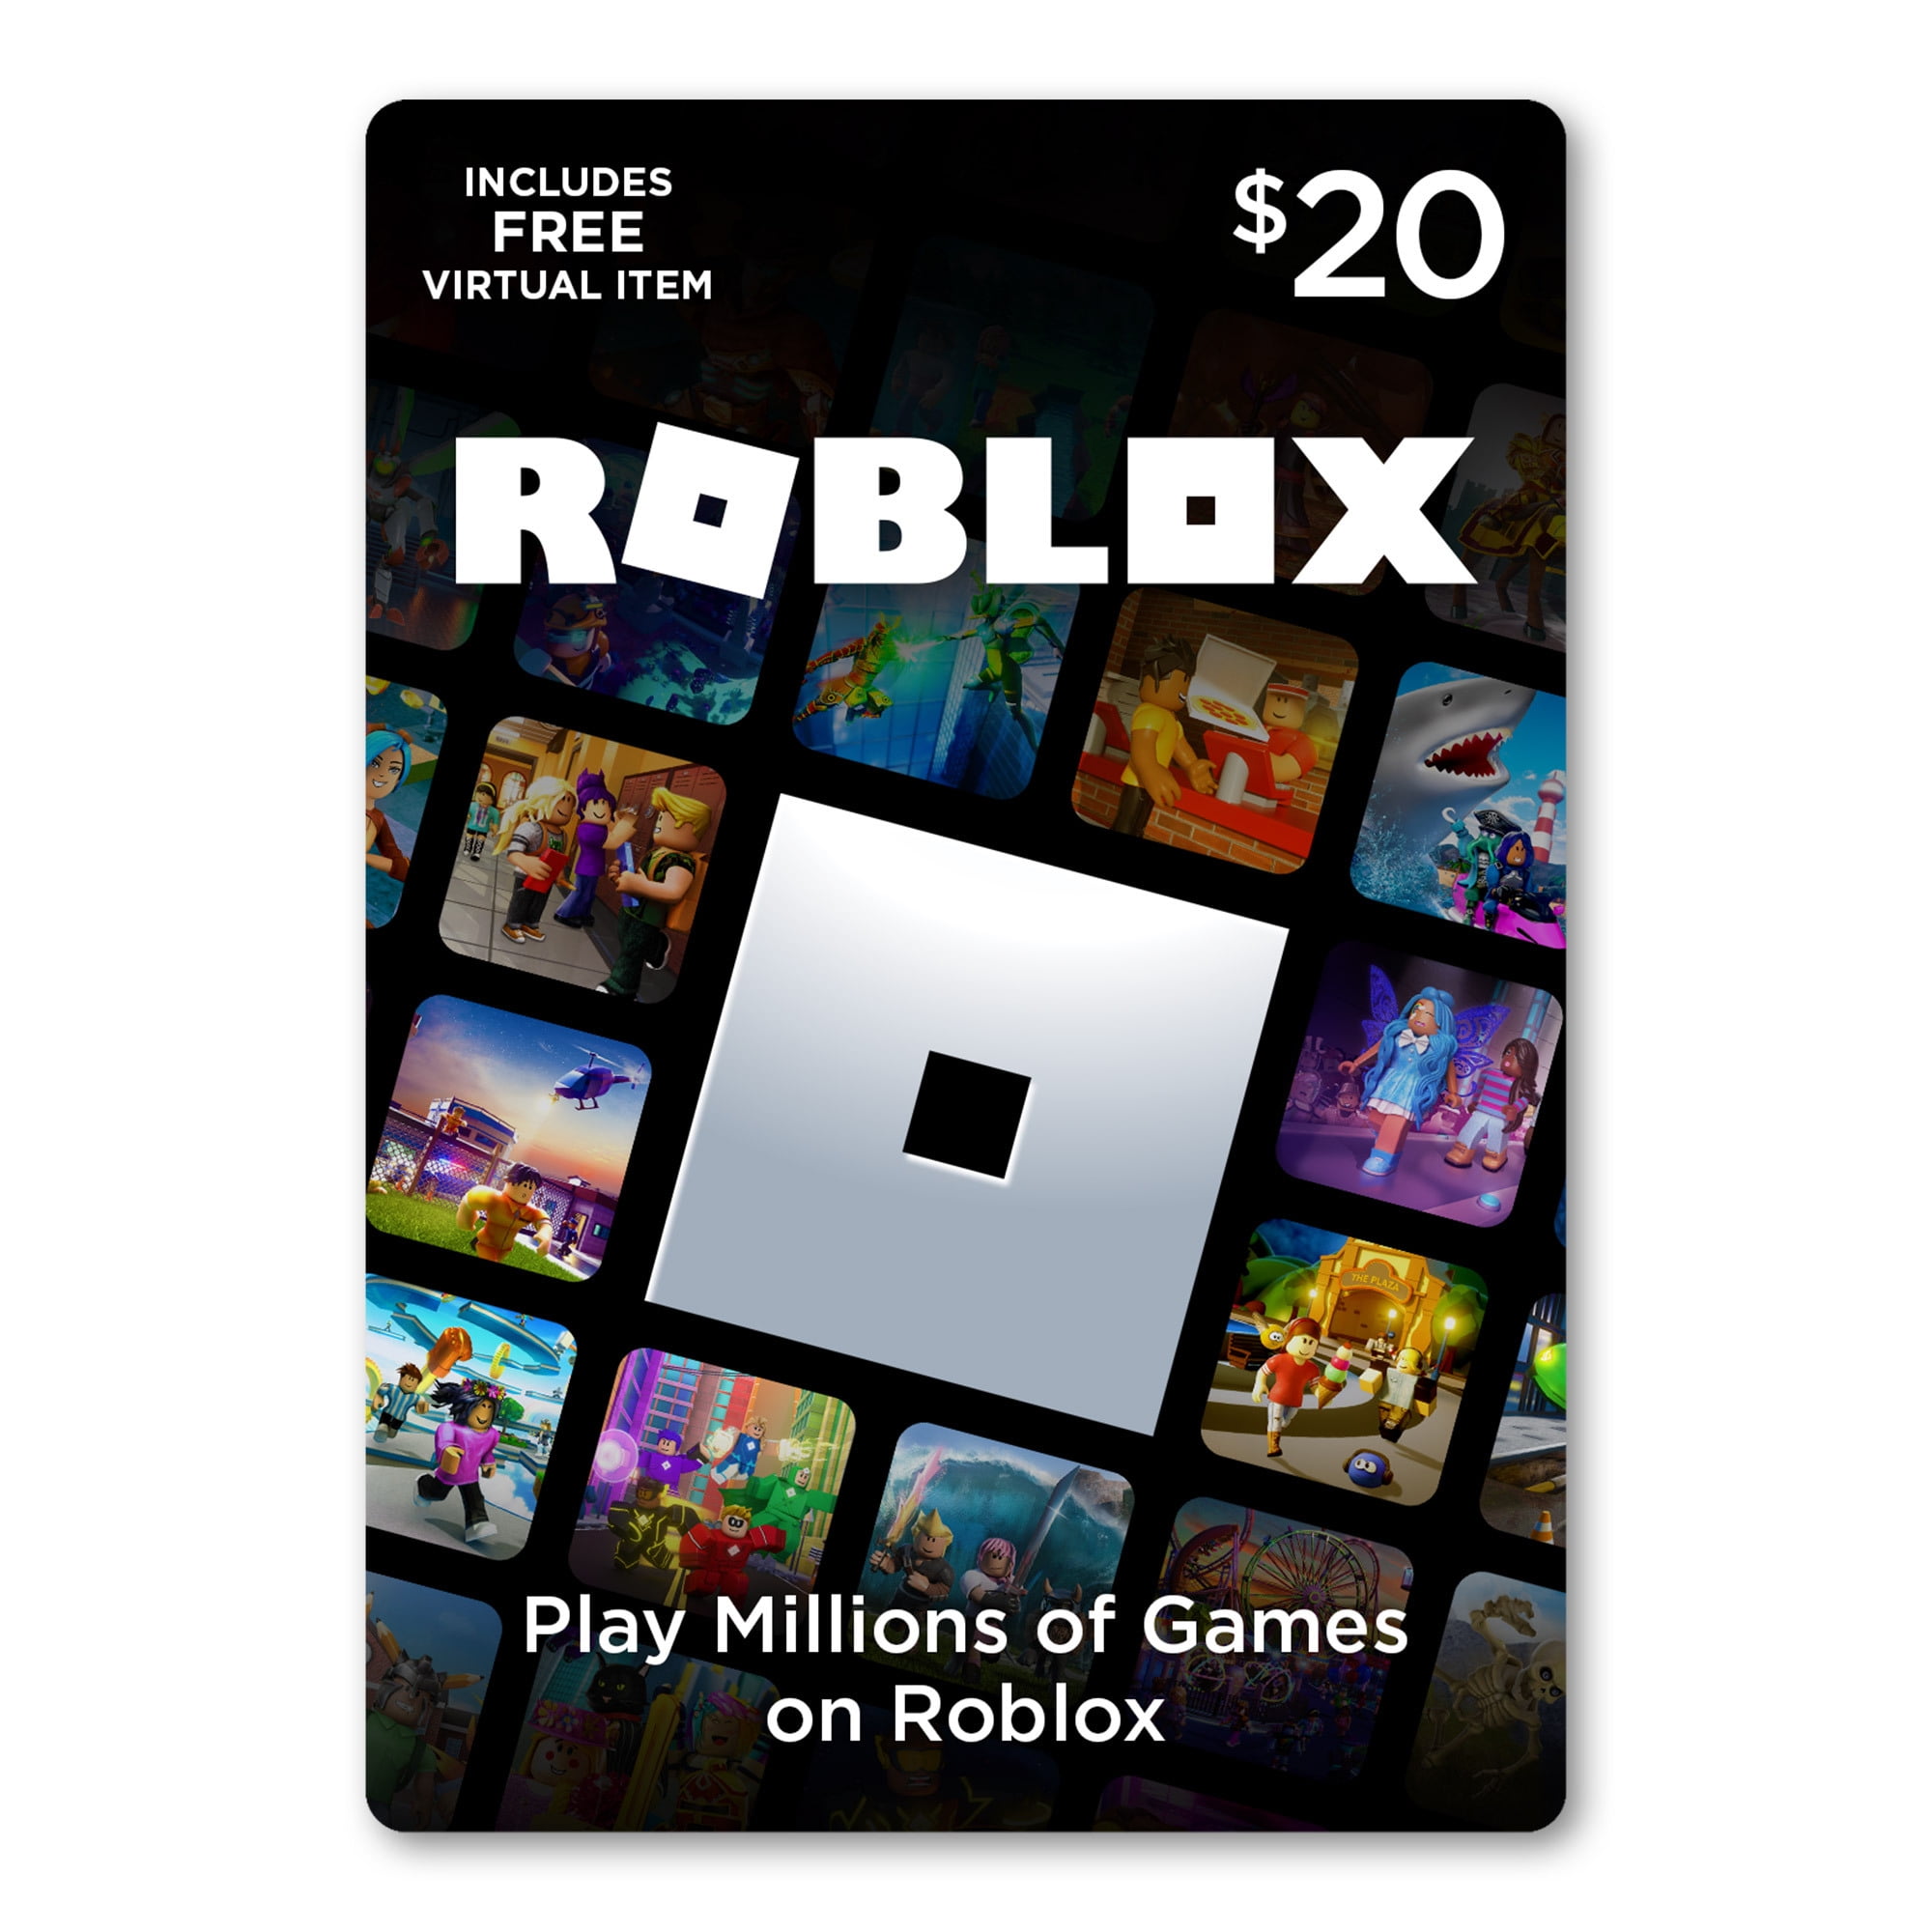 Roblox 20 Digital Gift Card Includes Exclusive Virtual Item Digital Download Walmart Com Walmart Com - roblox gift card qr code